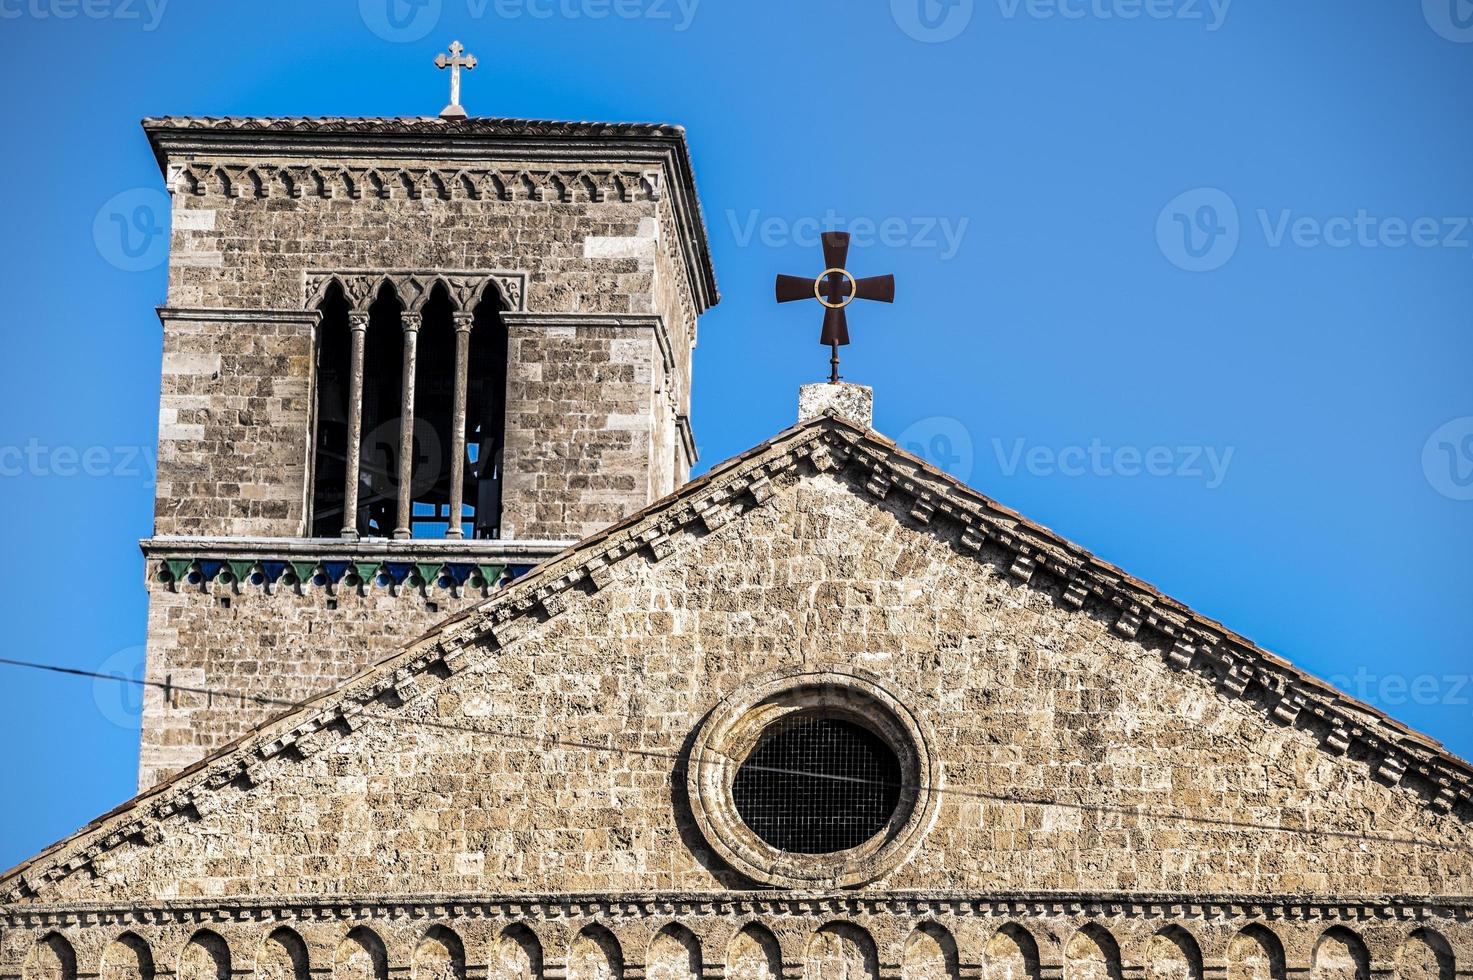 cambanile de l'église de san francesco in terni photo